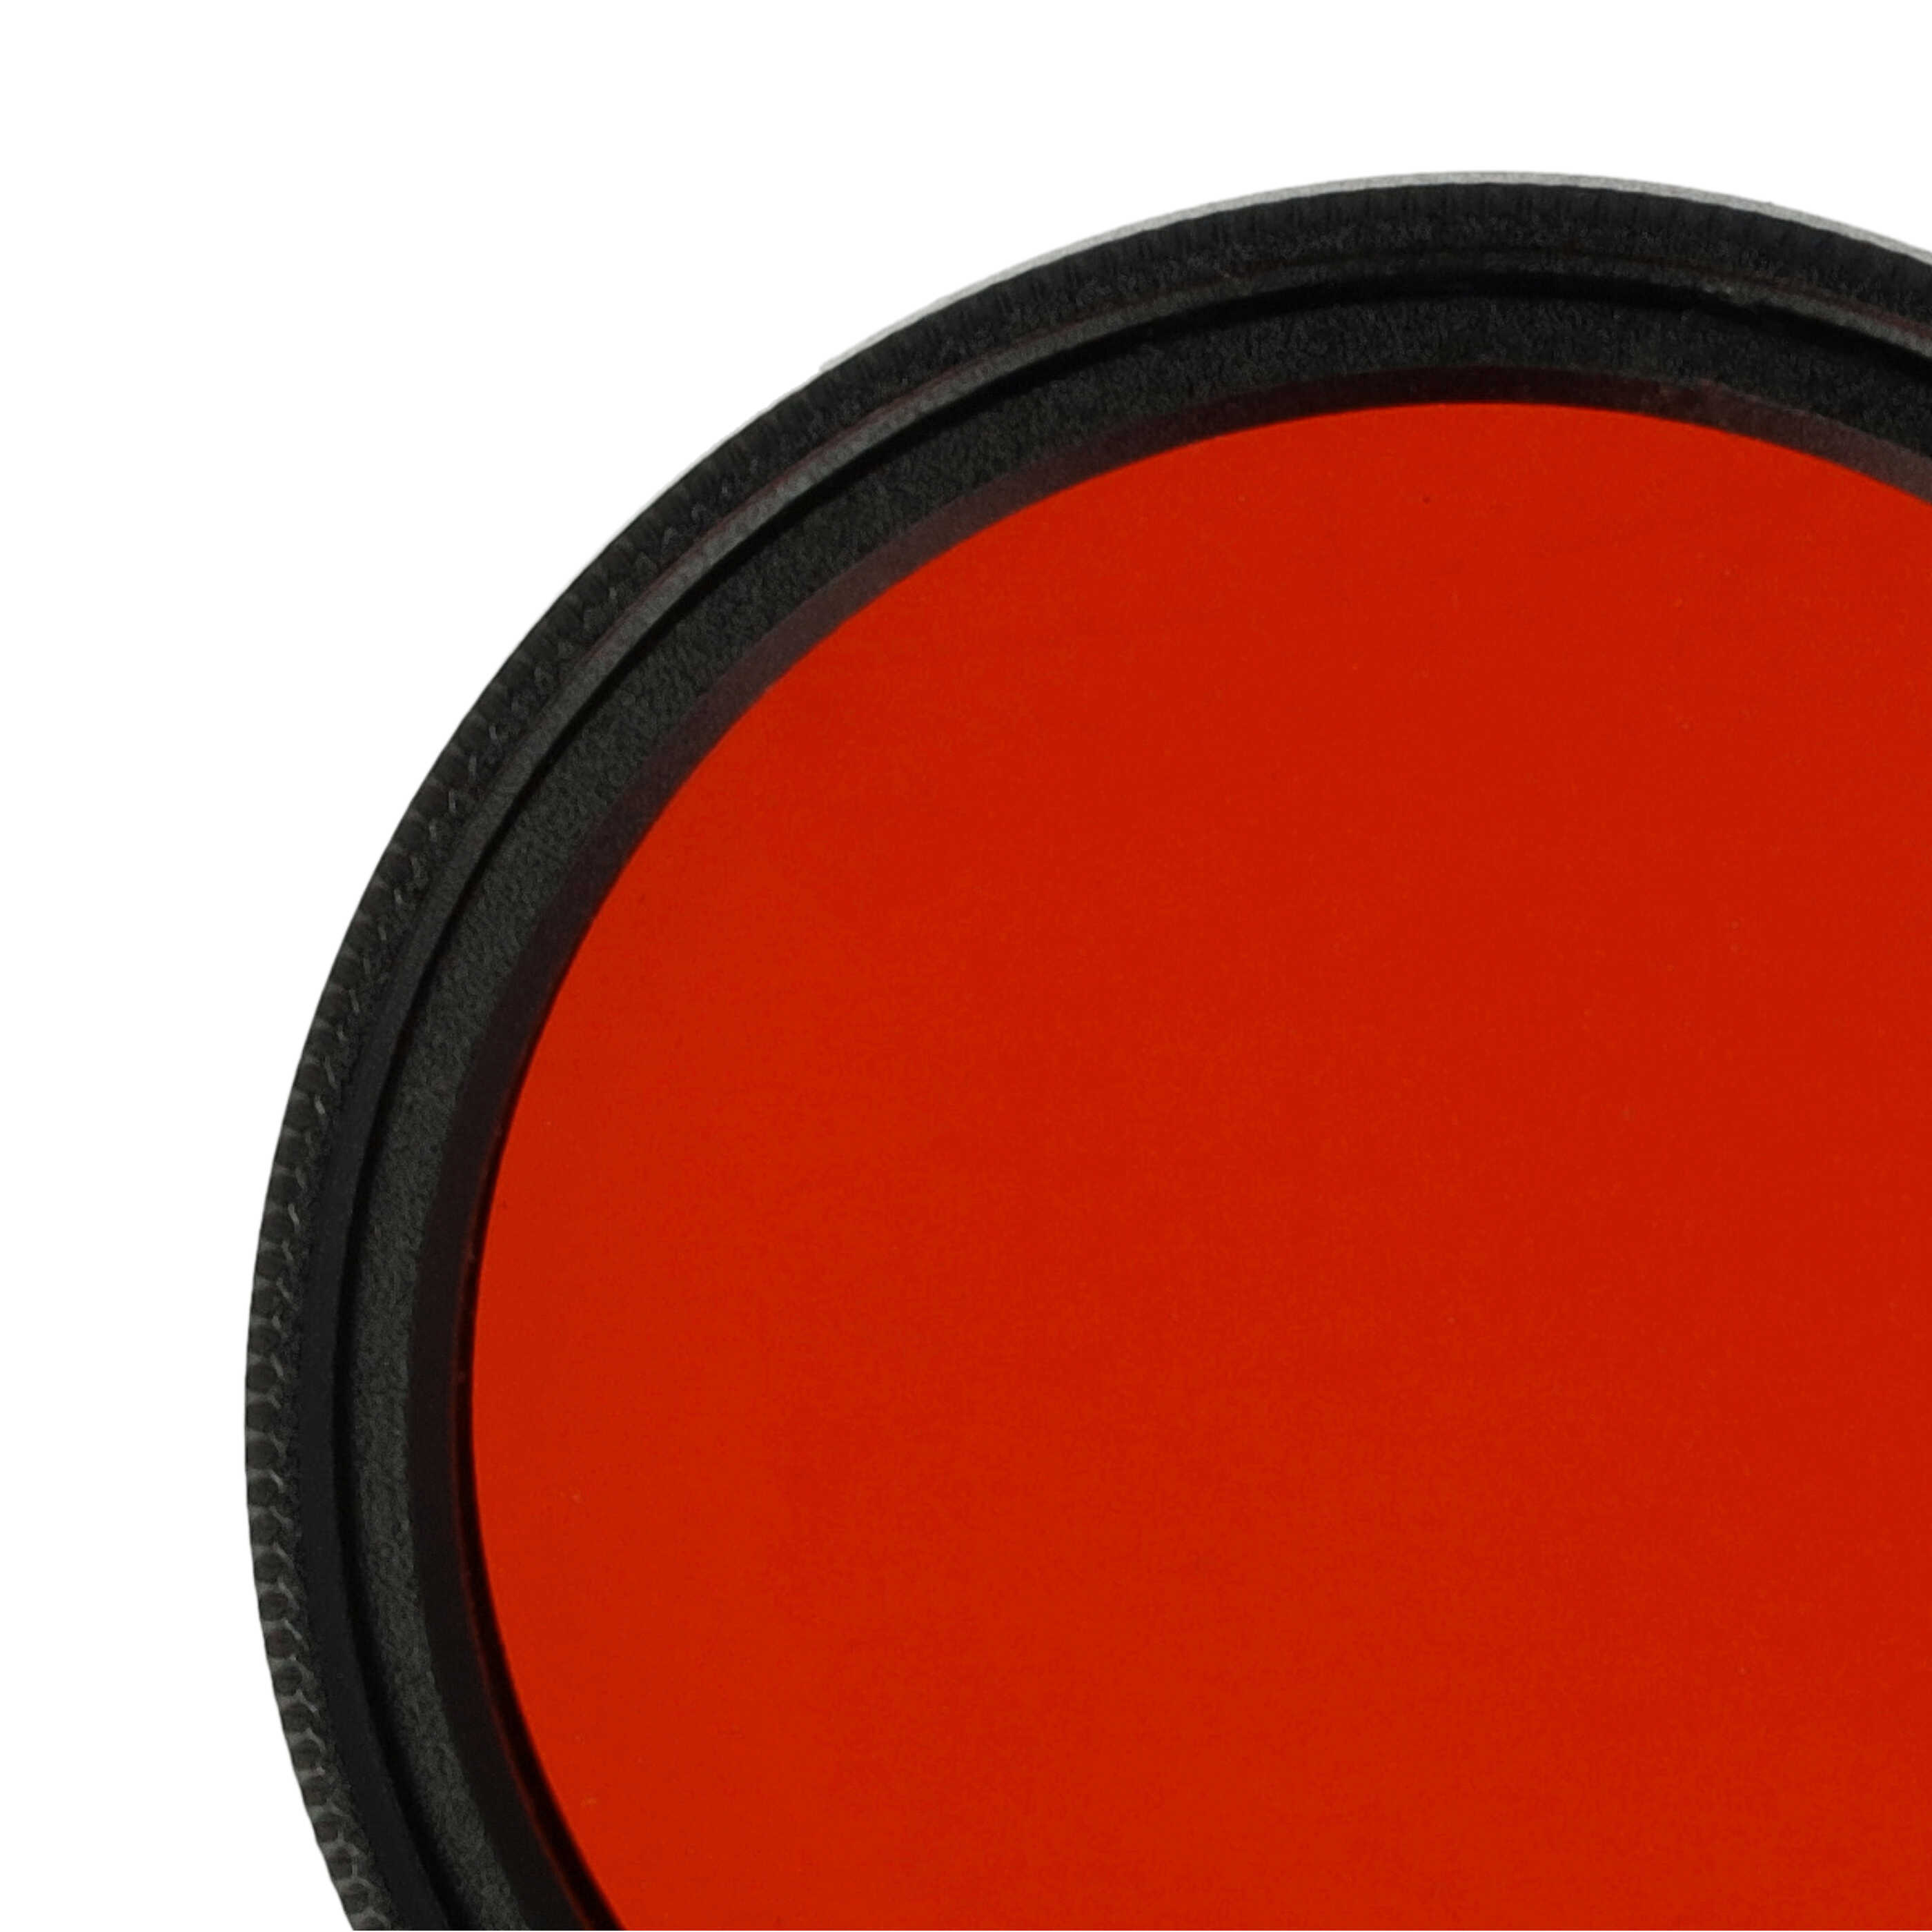 Filtro colorato per obiettivi fotocamera con filettatura da 37 mm - filtro arancione